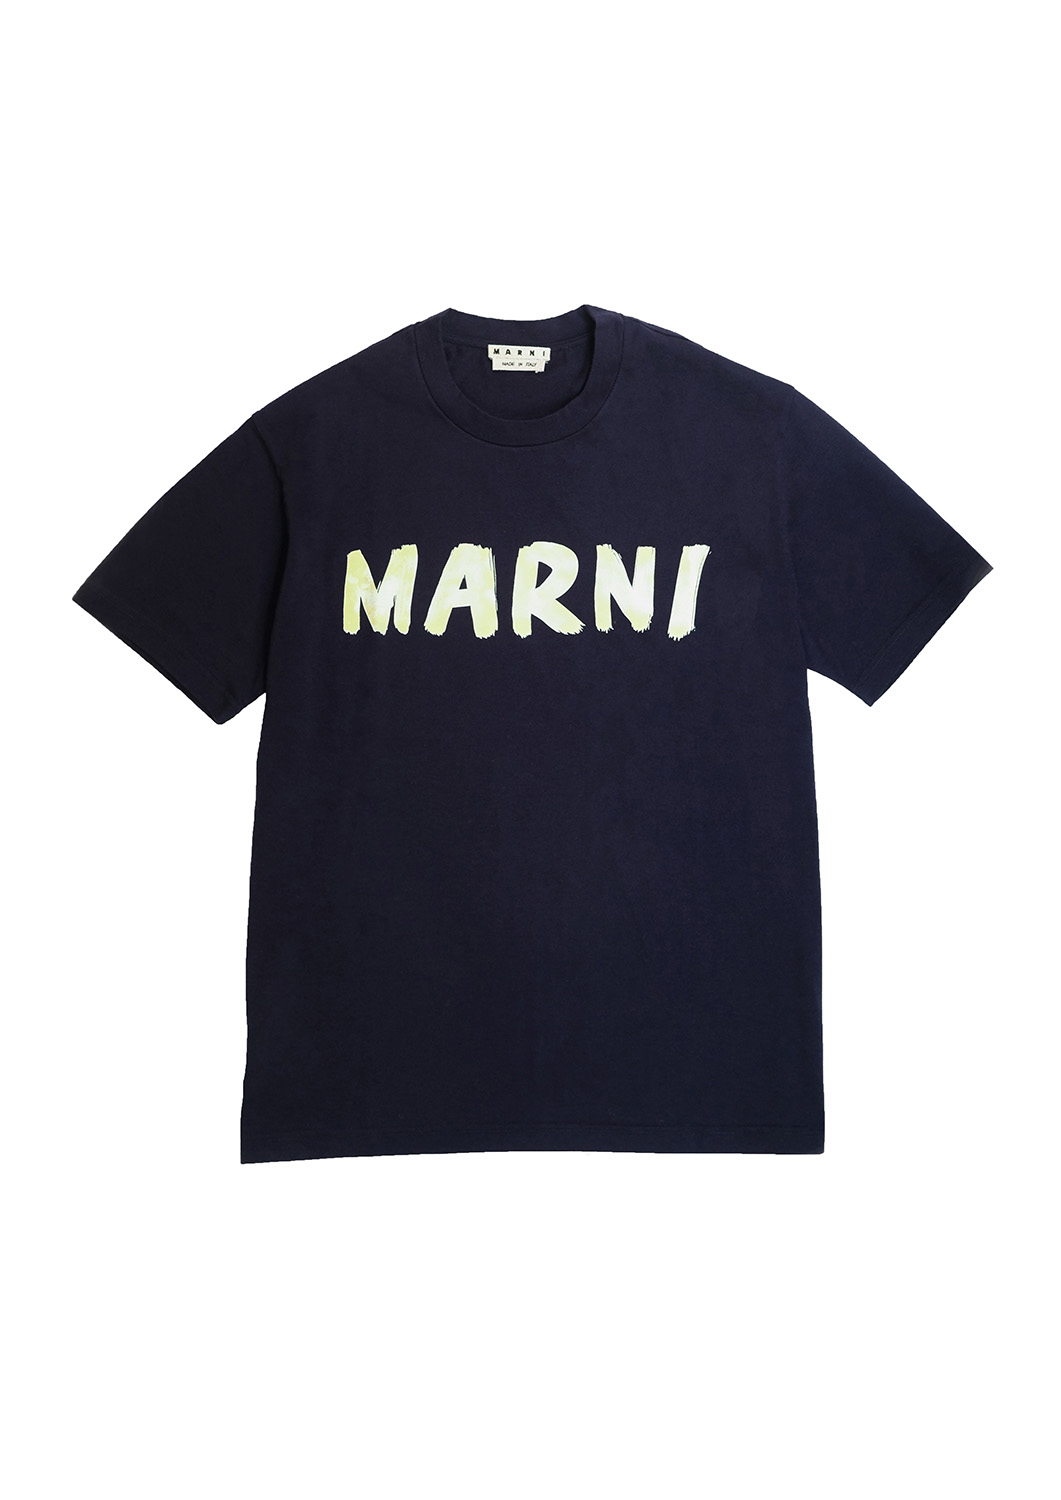 MARNI】2020SS ハンドペイントロゴTシャツ - Tシャツ/カットソー(半袖 ...